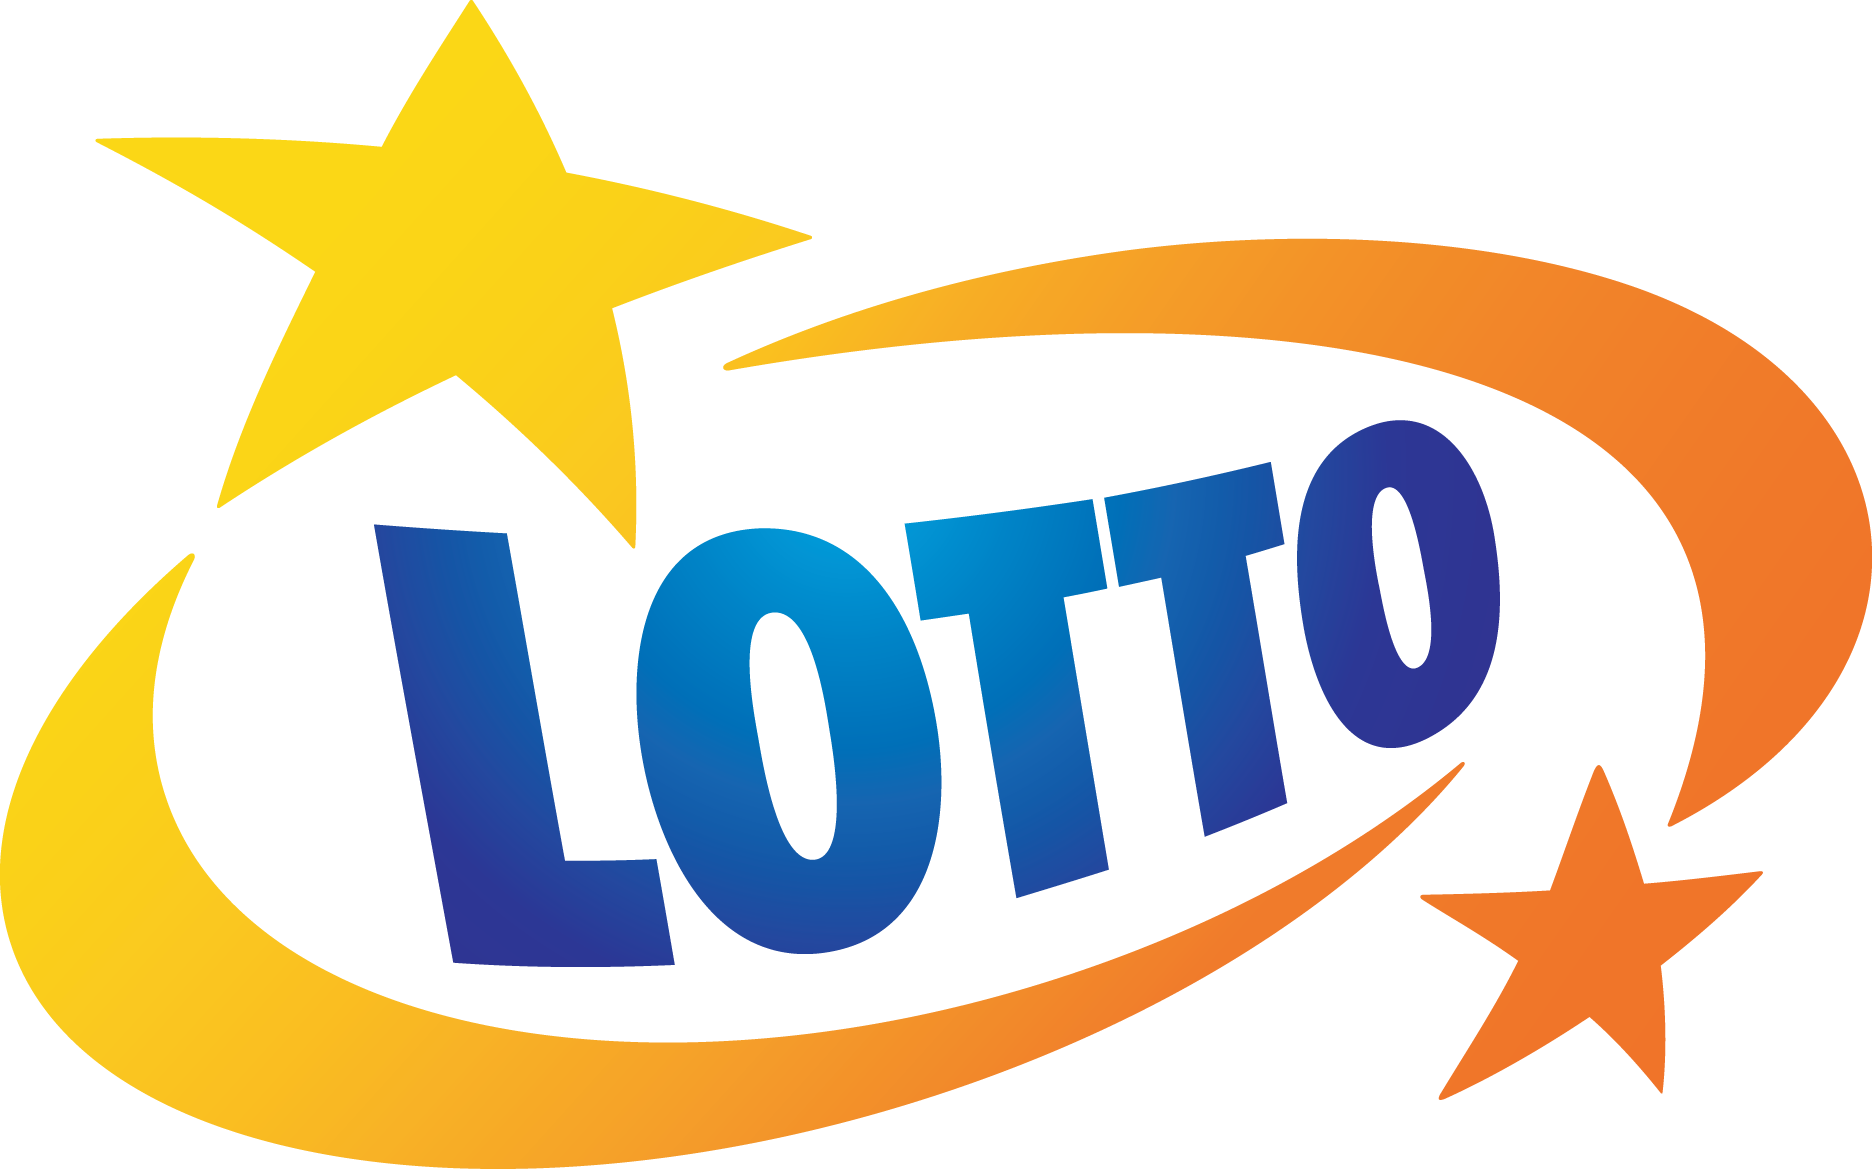 Partner tytularny: Totalizator Sportowy właściciel marki LOTTO